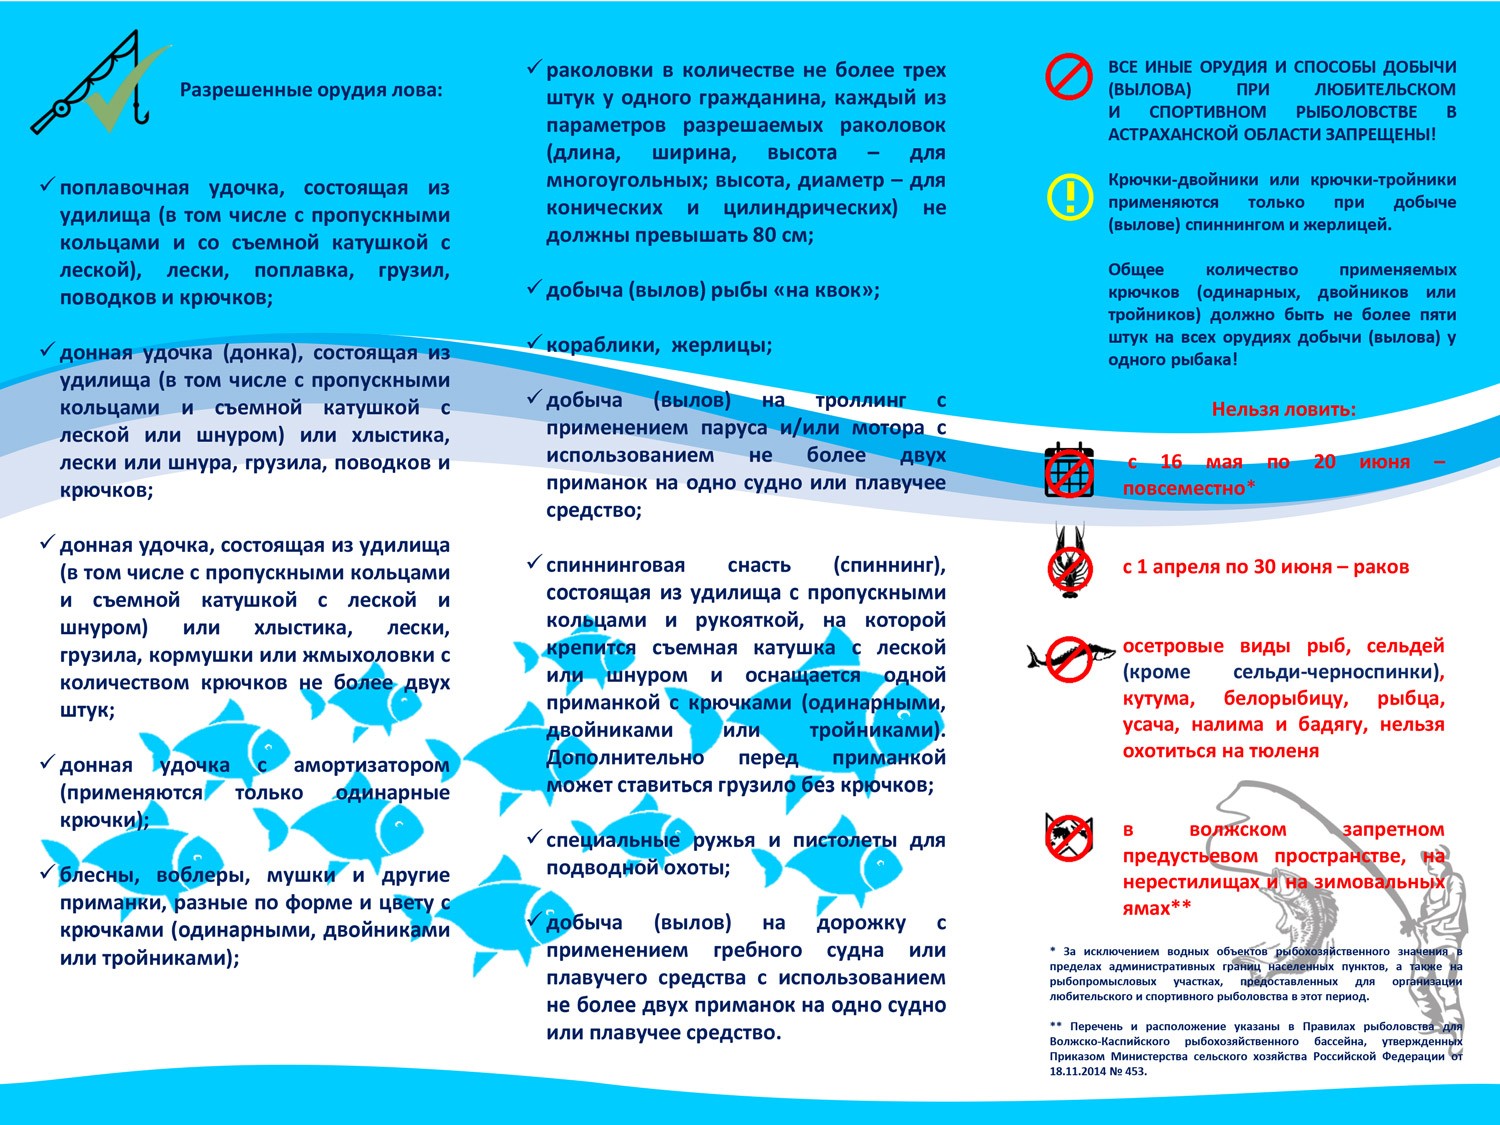 Нерестовый запрет 2024 астрахань. Правила рыбной ловли. Памятка для рыболовов любителей. Правила Любительской рыбной ловли. Памятка для рыбаков любителей в Астраханской области.